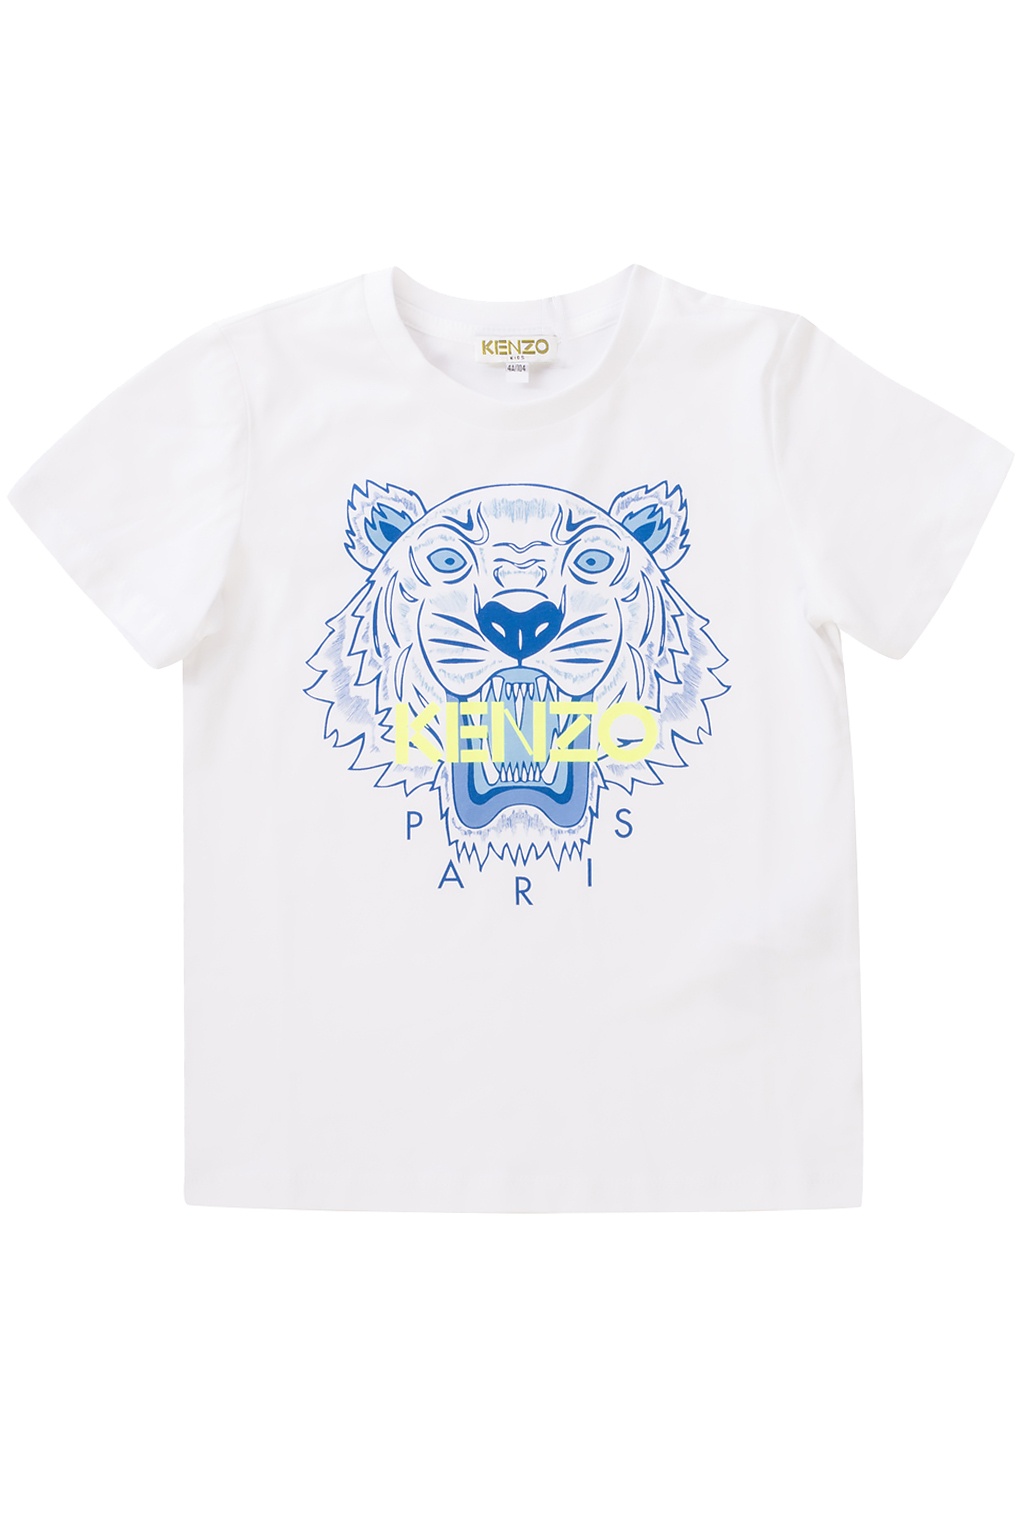 kenzo toddler shirt